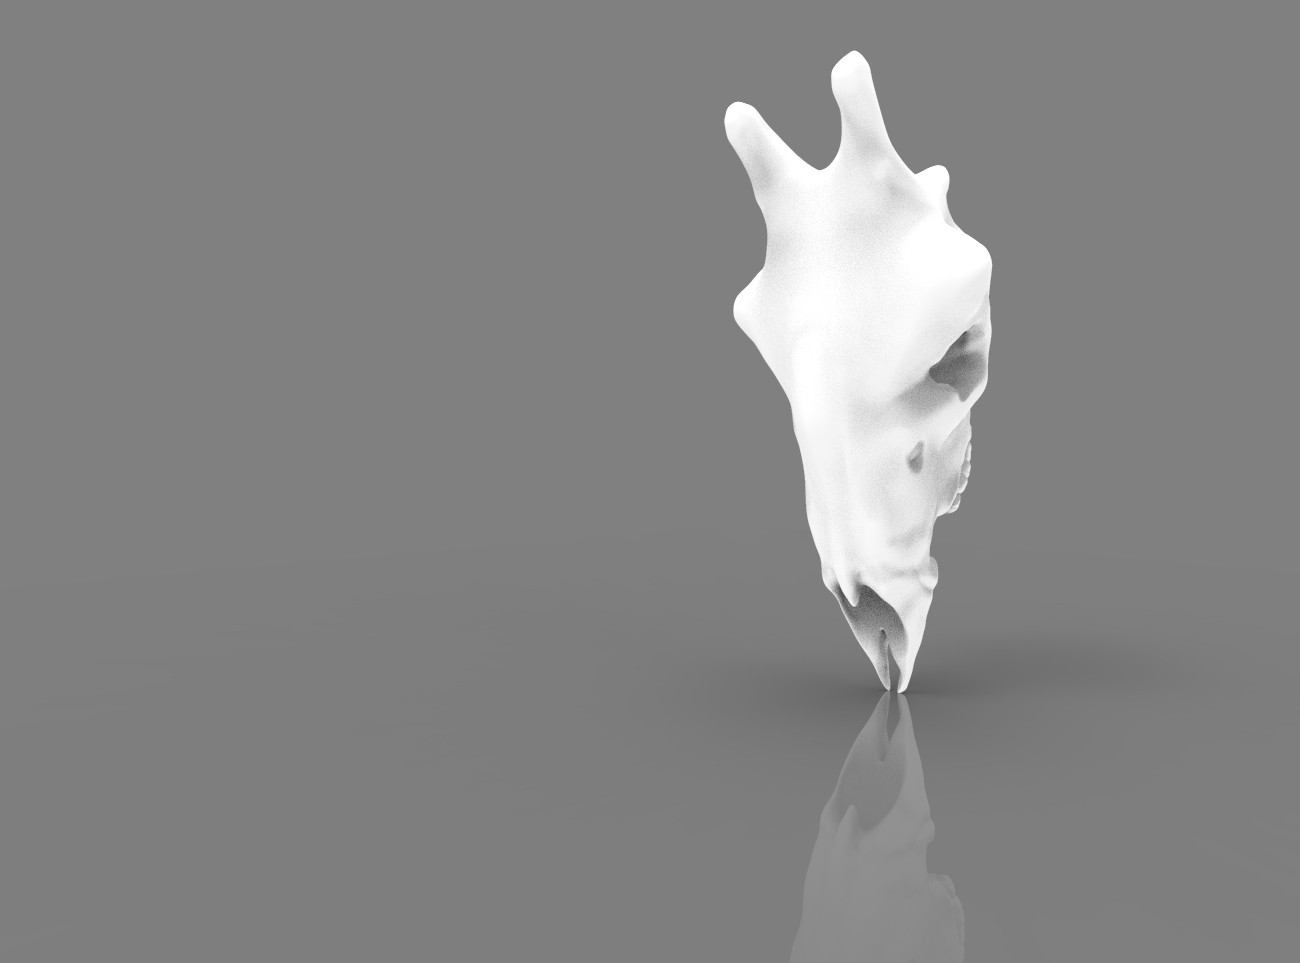 Giraffe Skull 3D print model